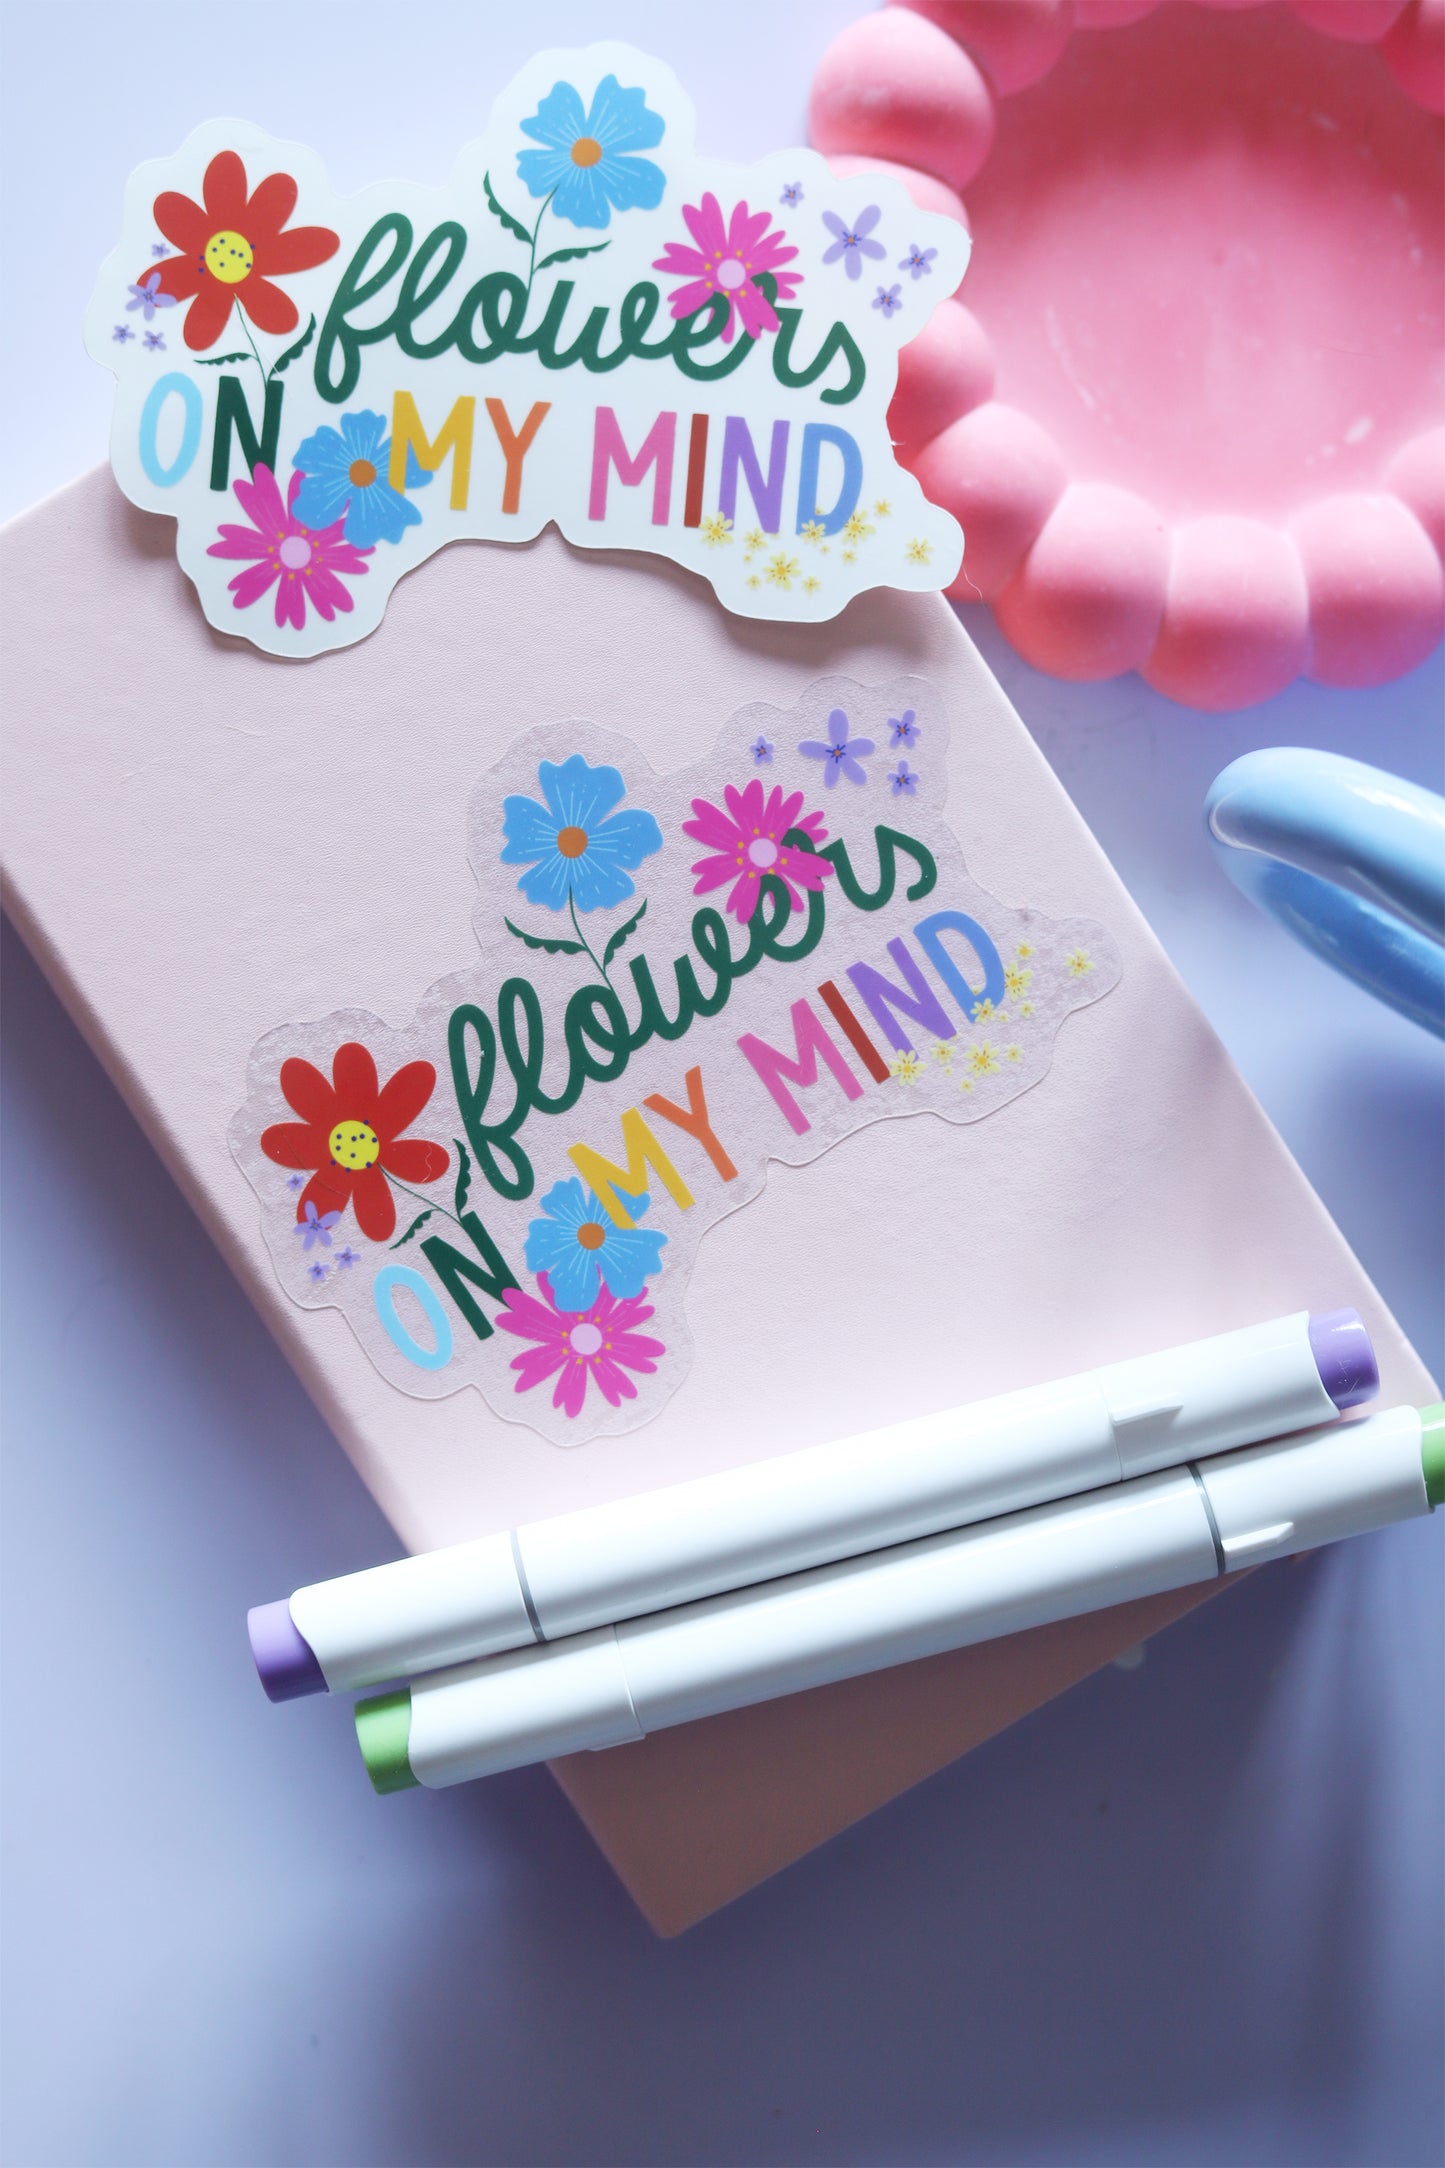 Sticker "Flowers on my mind" géant